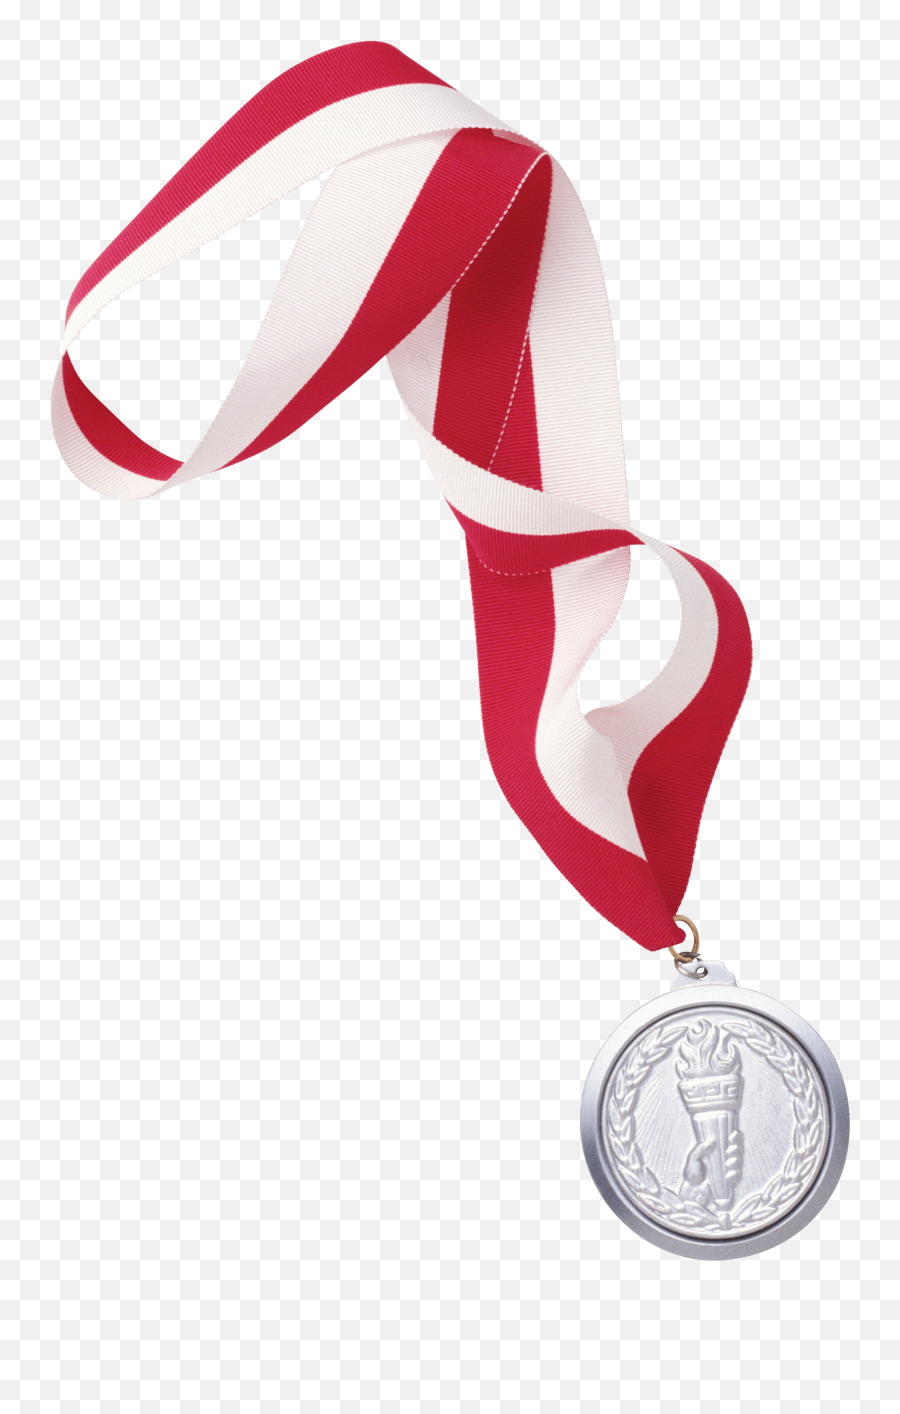 Sports Medal Clipart - Transparent Background Medals Clipart Emoji,Silver Medal Emoji